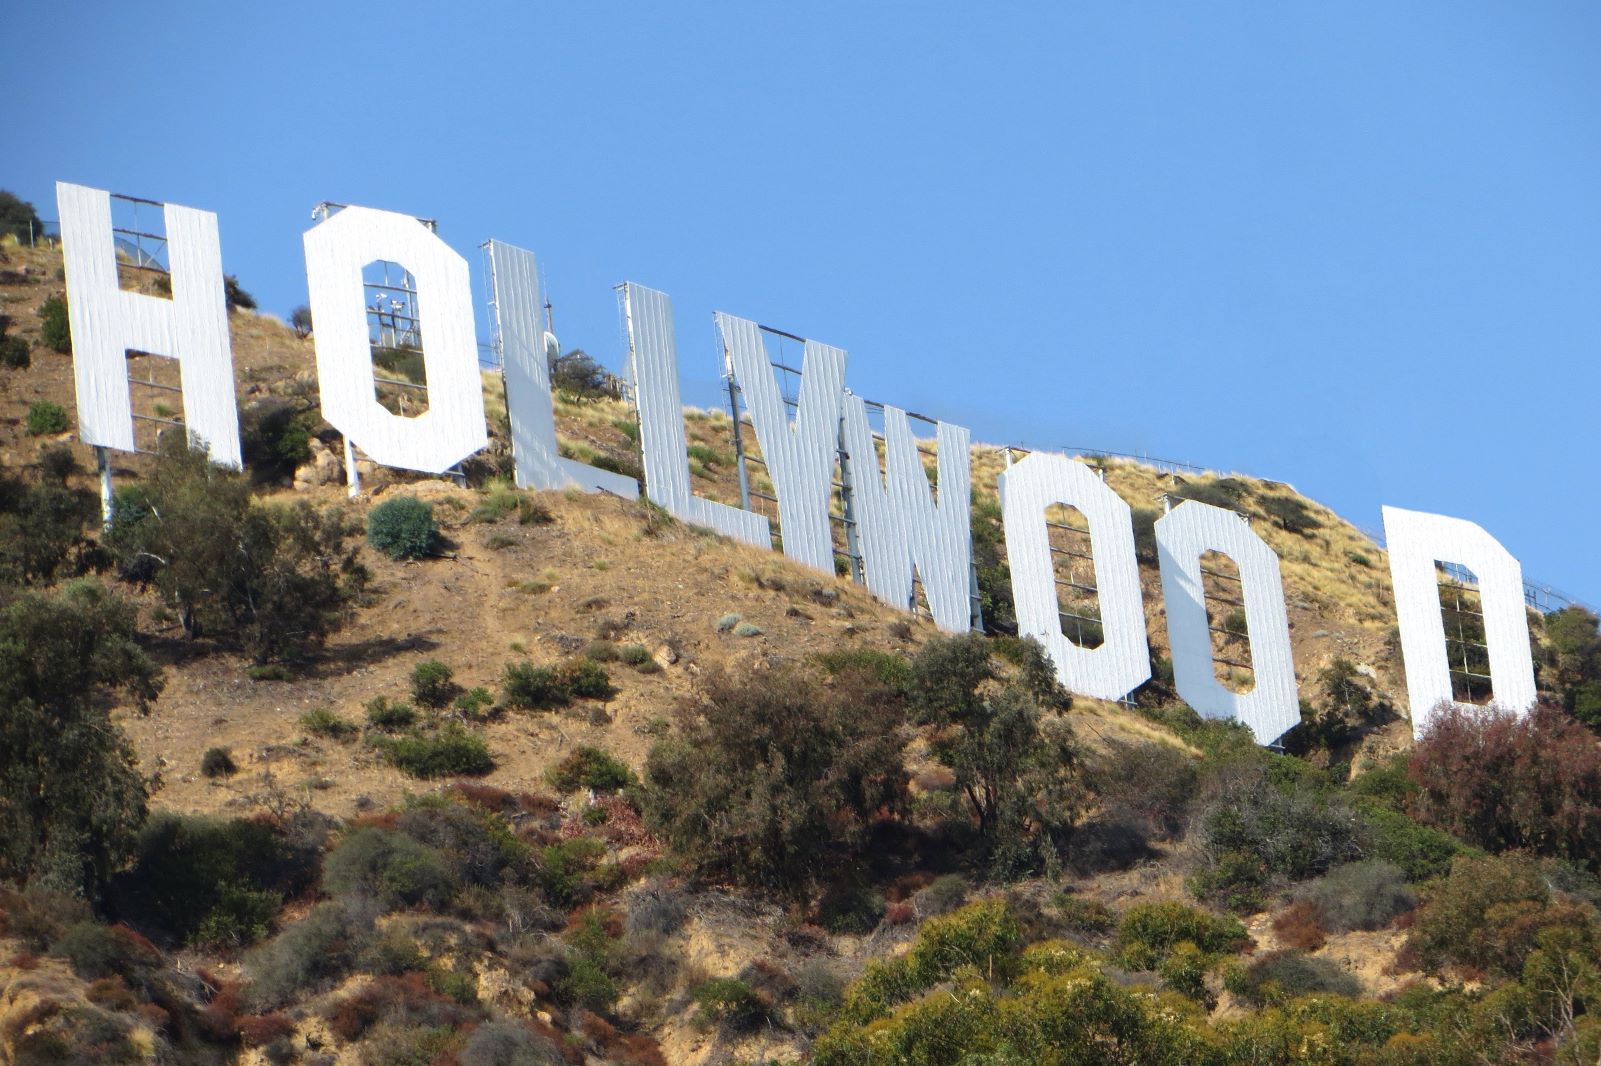 Icónico letreiro de Hollywood ganha retoques para o seu centenário